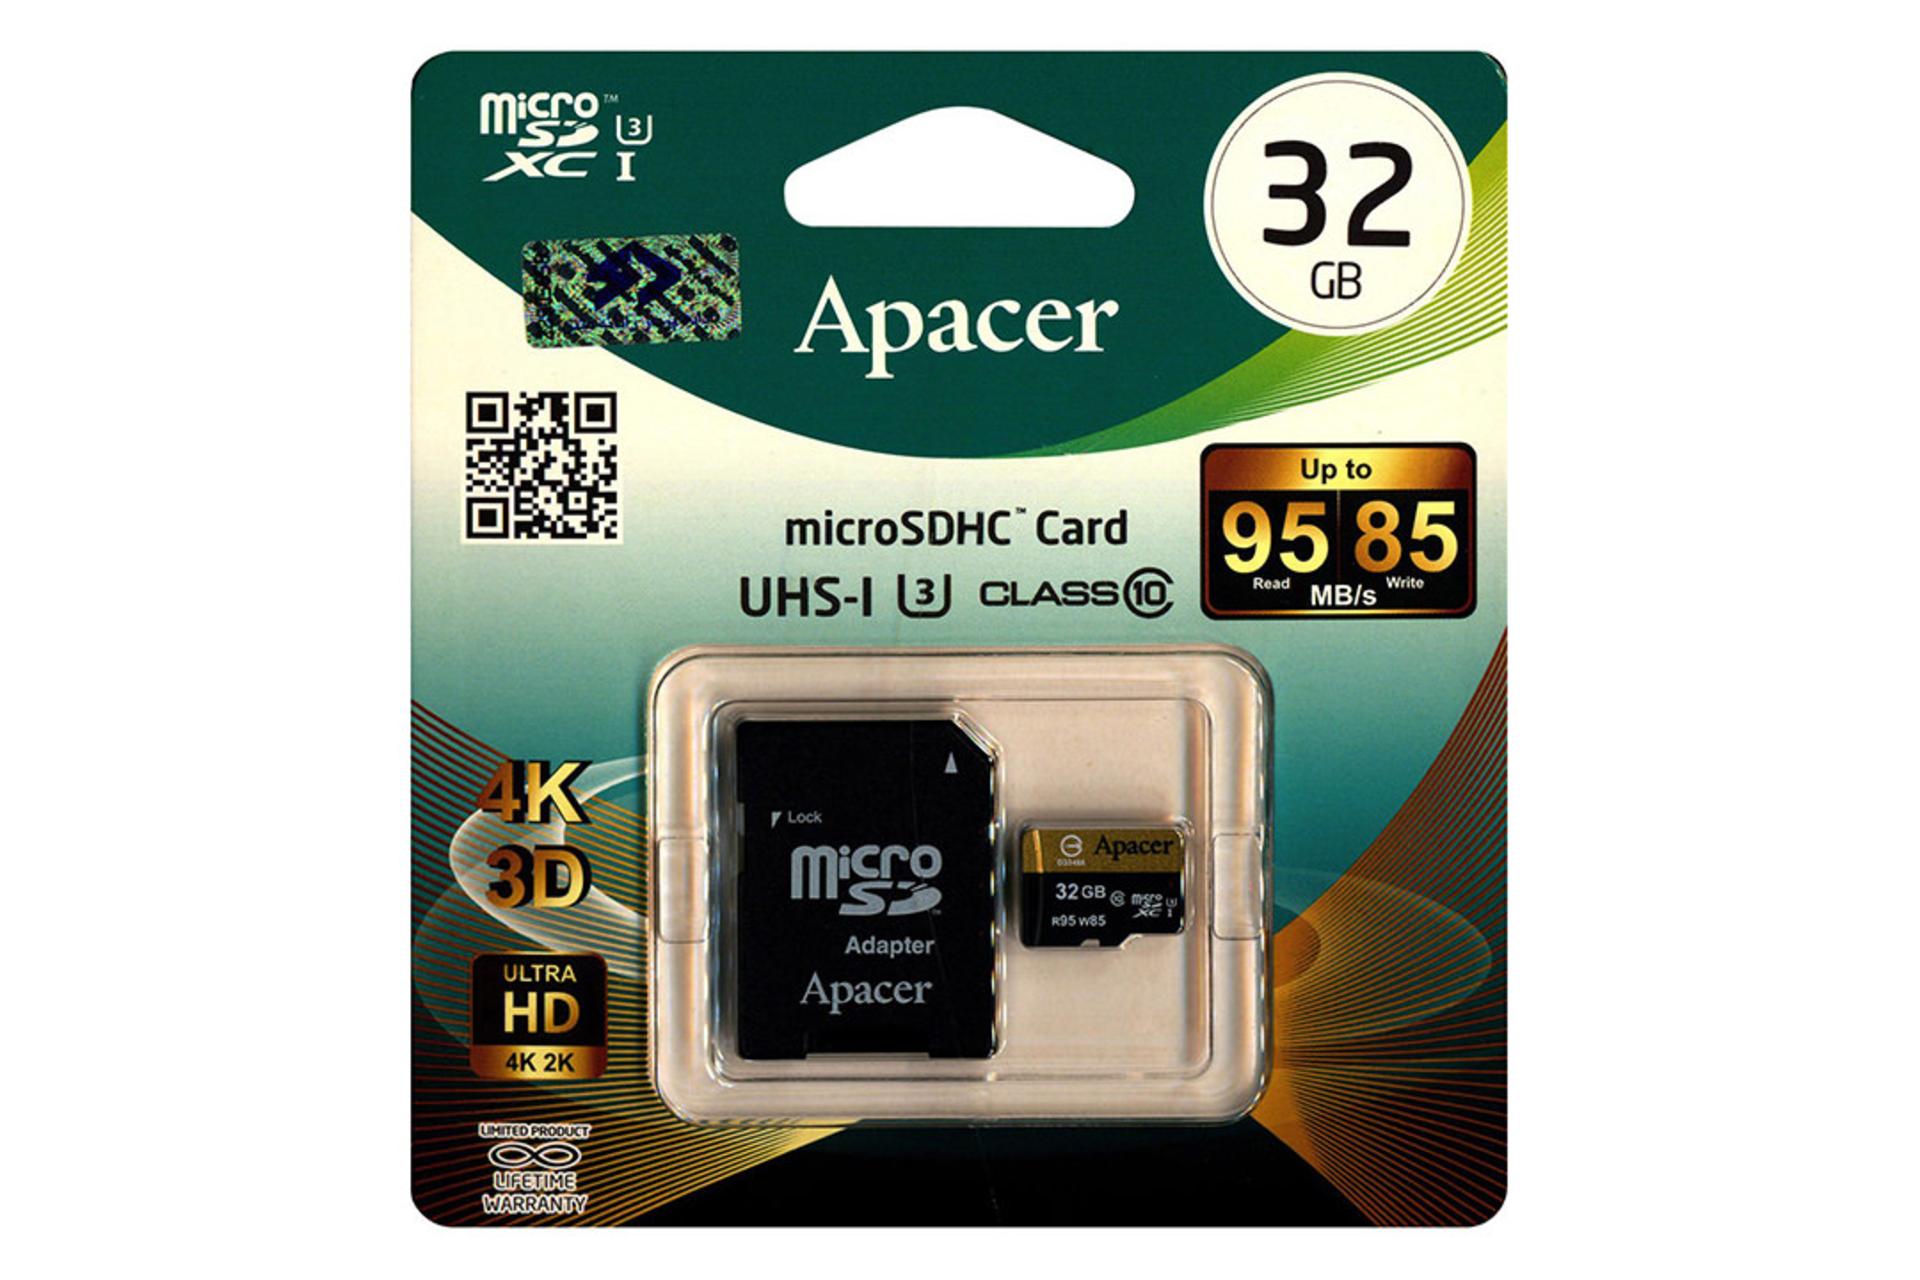 Apacer microSDHC Class 10 UHS-I U3 32GB